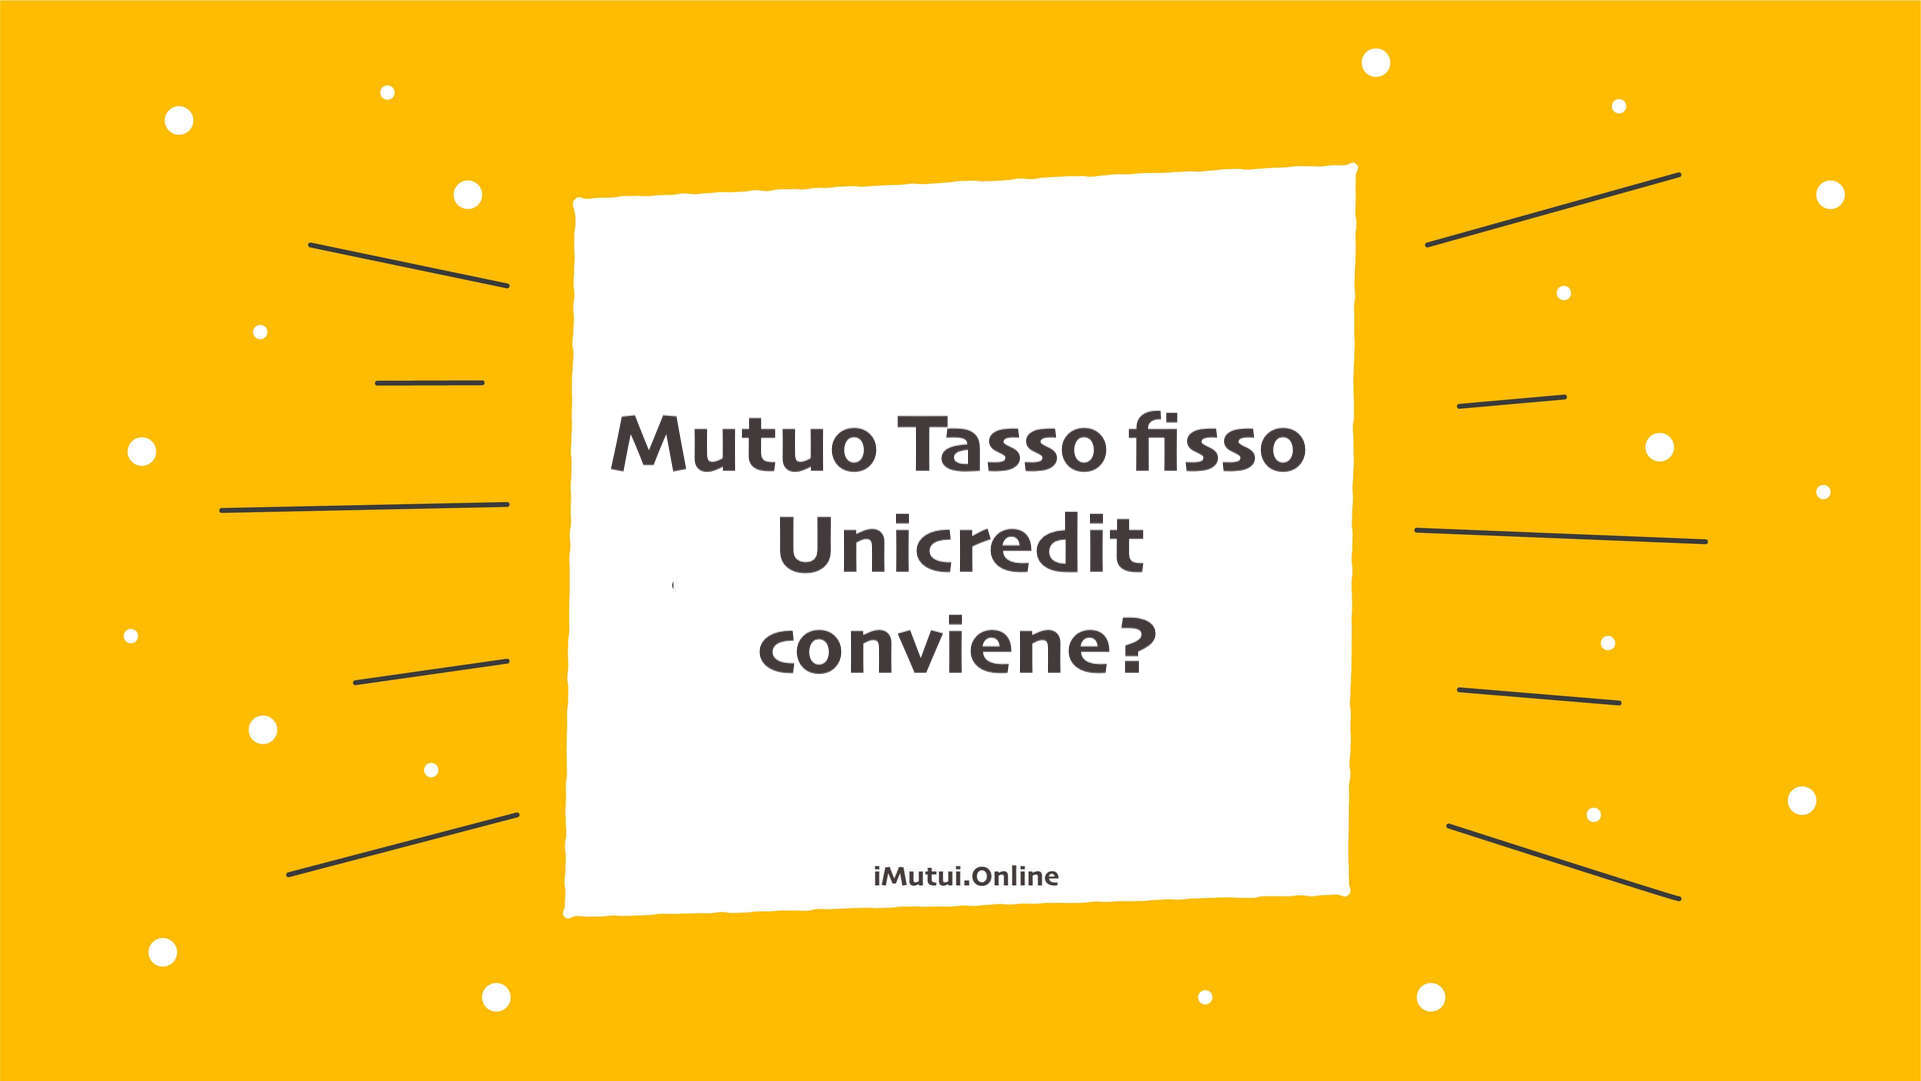 Mutuo Tasso fisso Unicredit conviene?